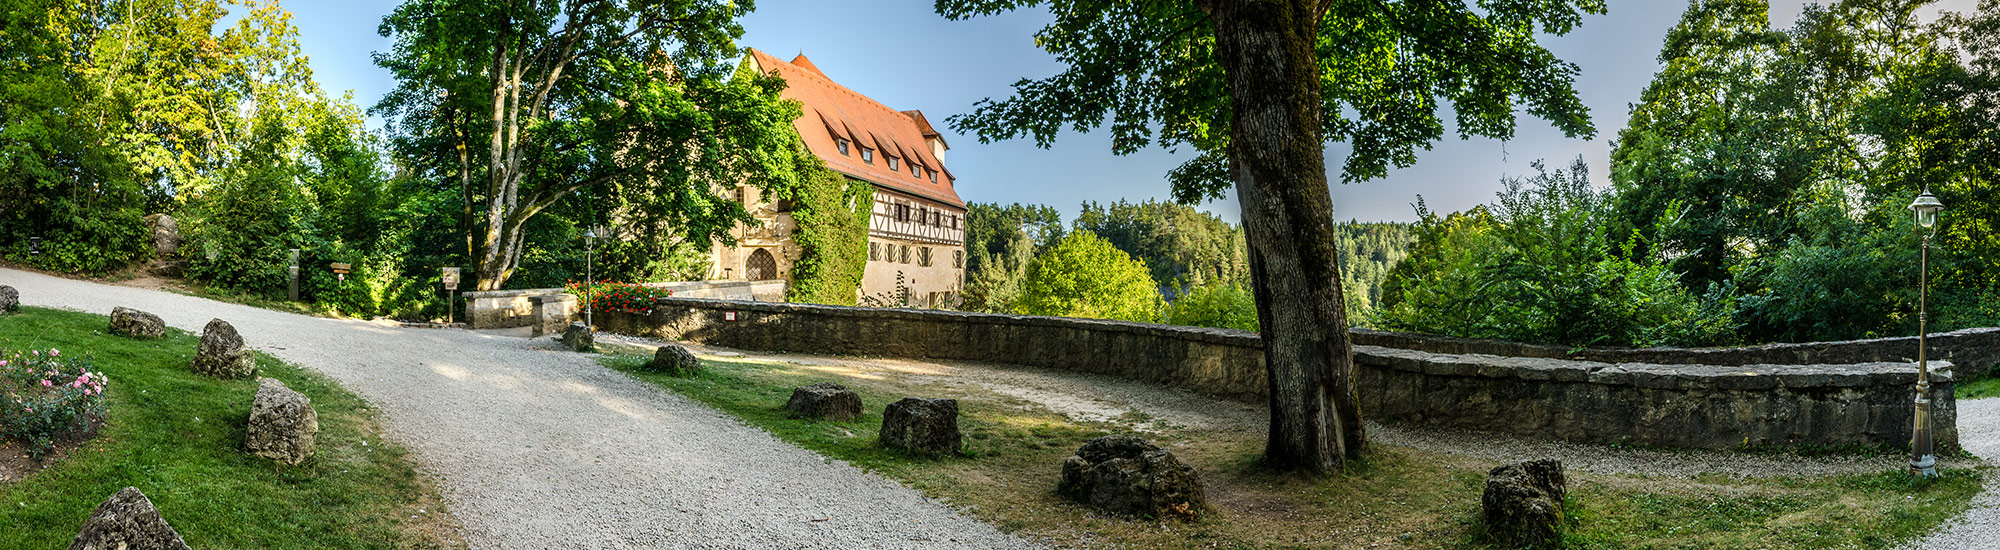 Burg Rabenstein 4